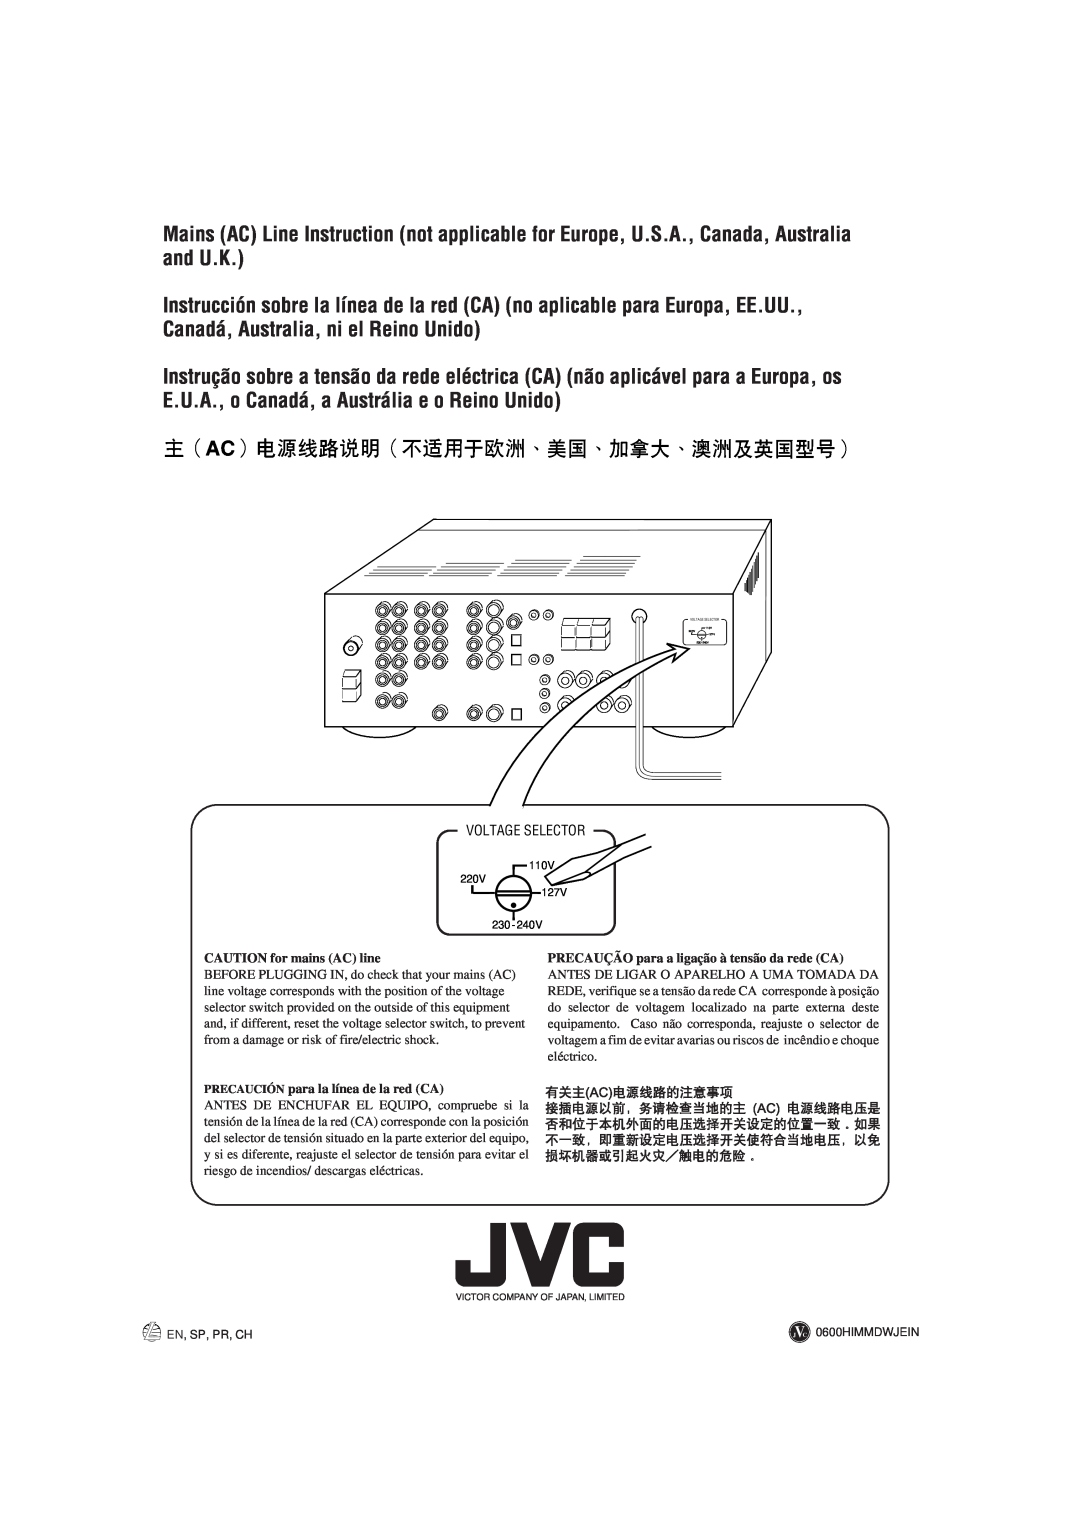 JVC RX-7001PGD manual CAUTION for mains AC line, PRECAUCIÓN para la línea de la red CA, En, Sp, Pr, Ch, J C 0600HIMMDWJEIN 